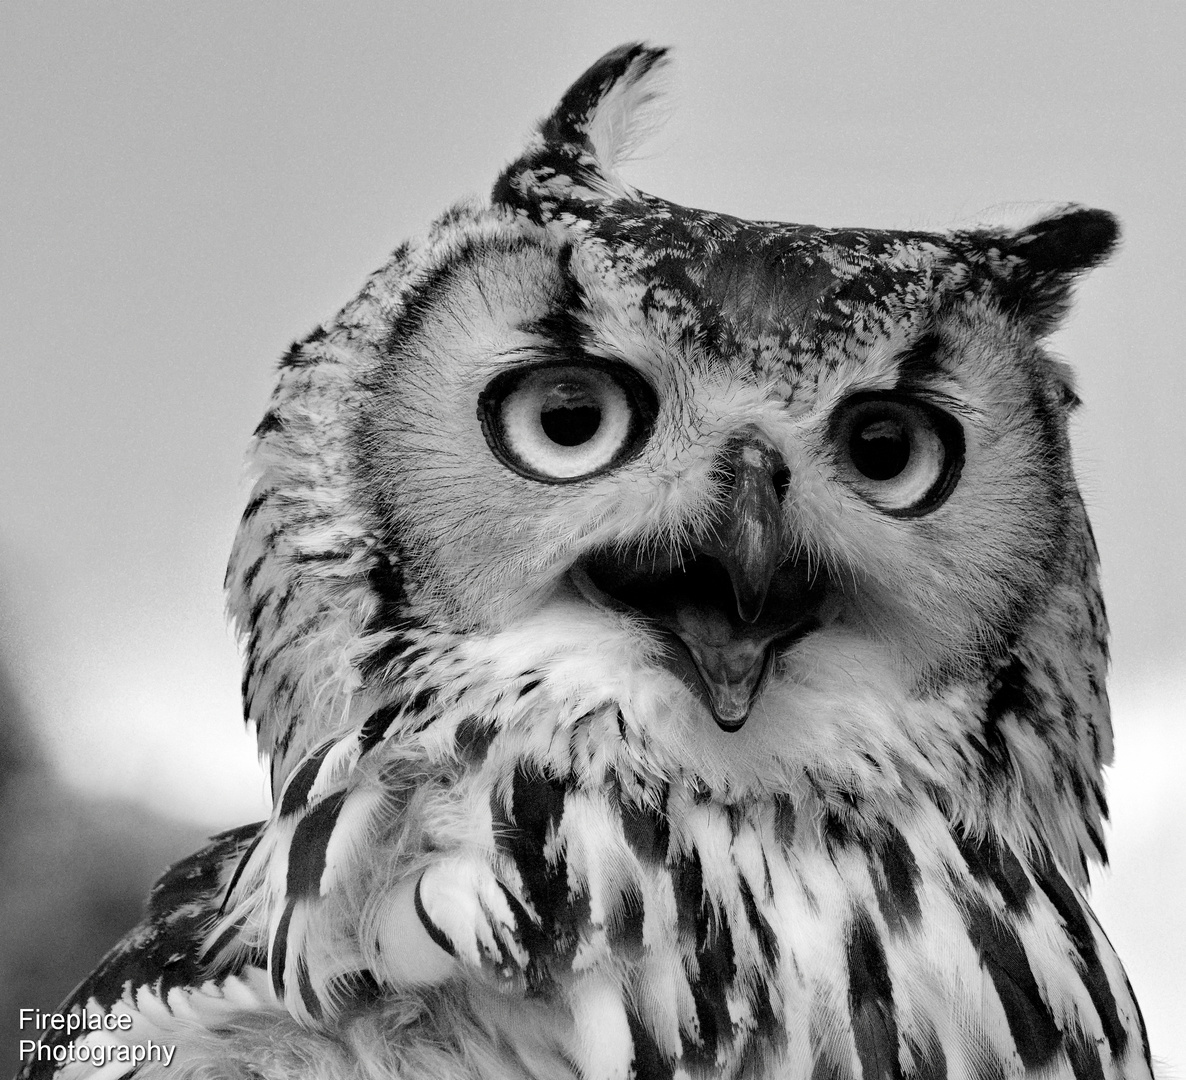 A fine English owl